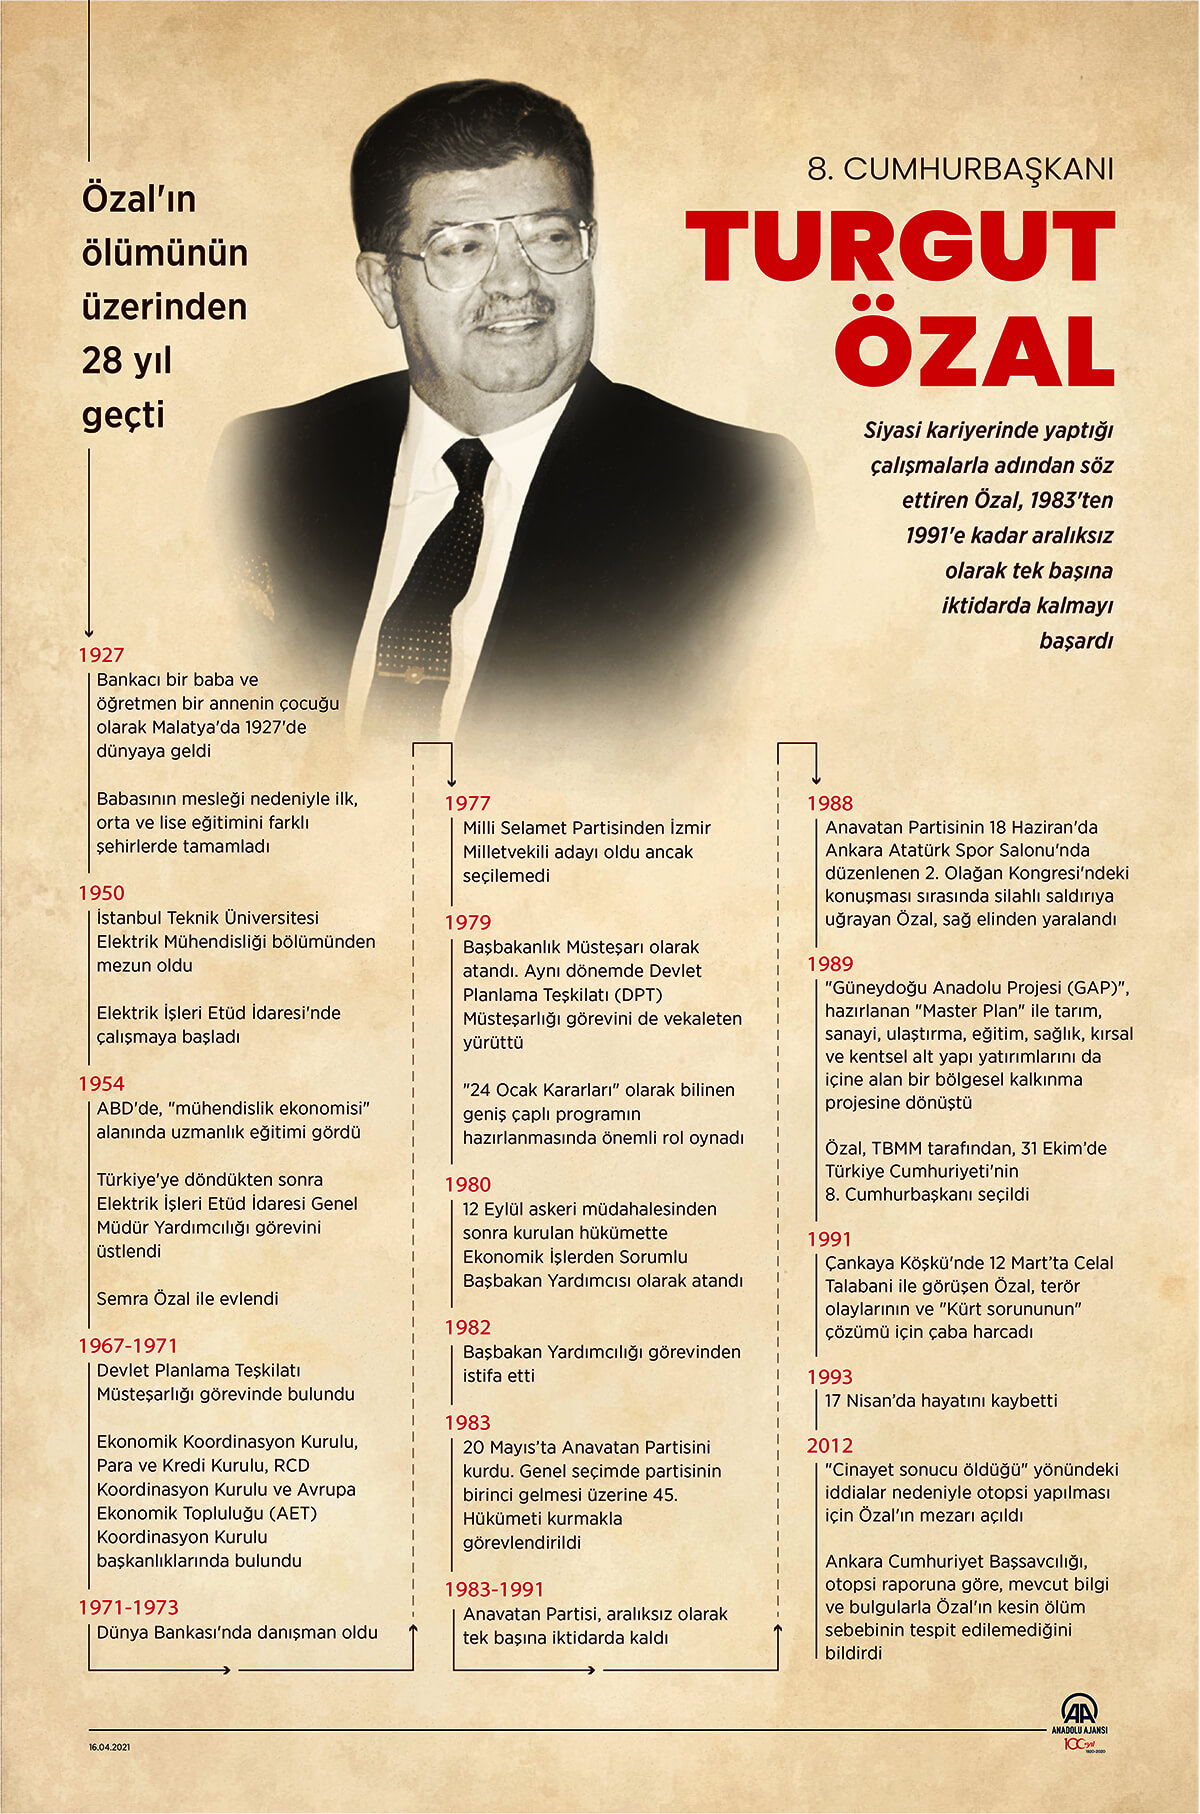 Turgut Özal Biyografisi infografik